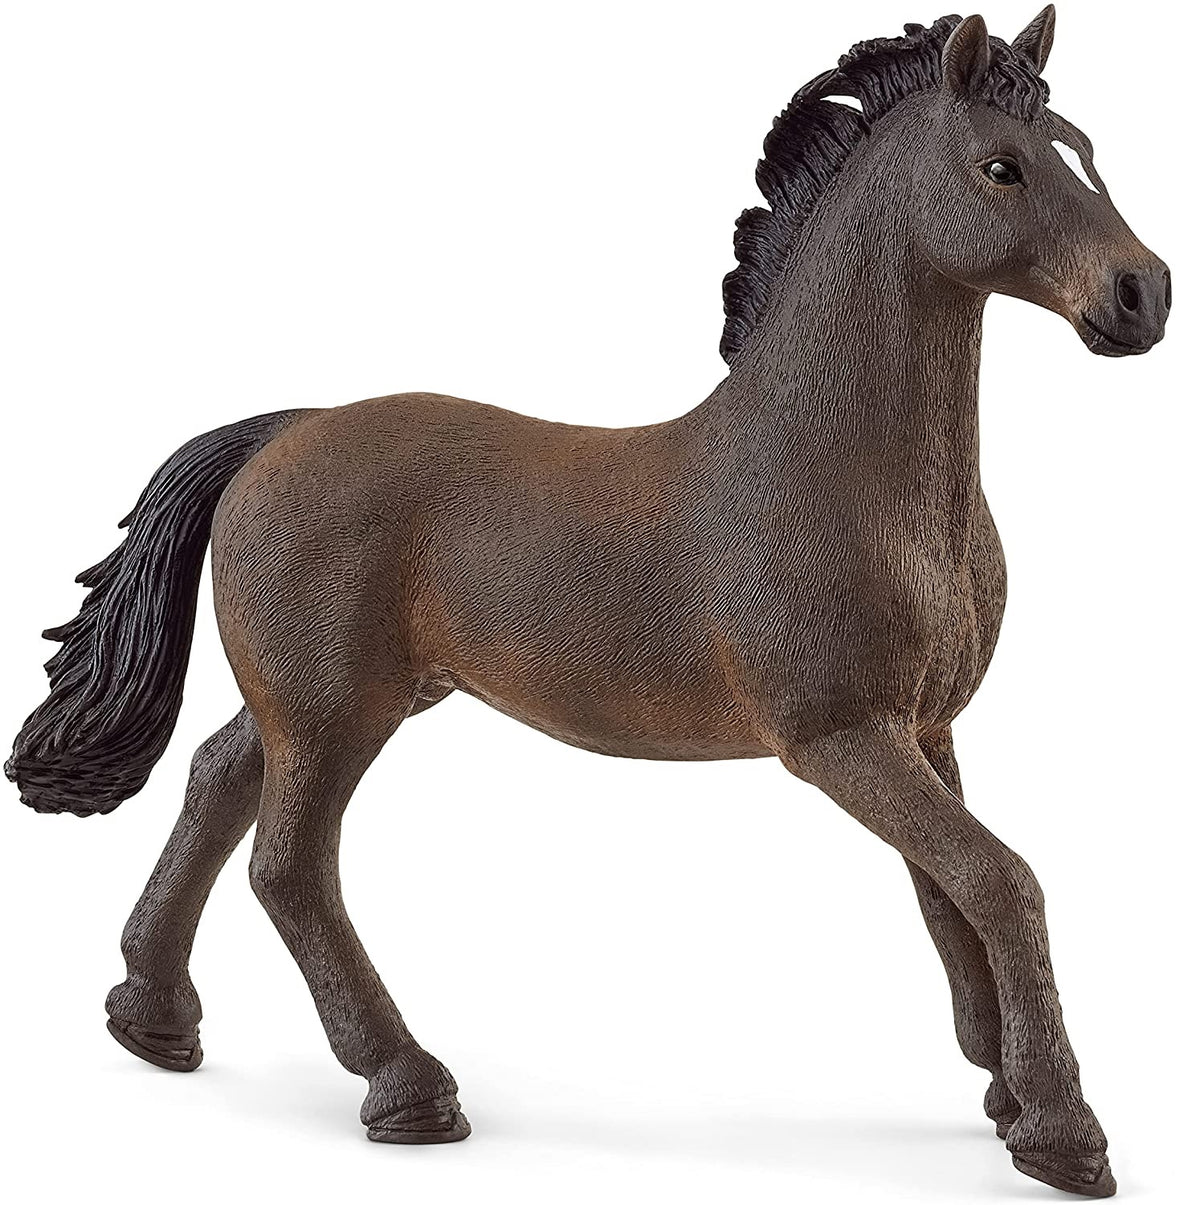 Schleich 13946 Stallion Toy Figurine, Plastic